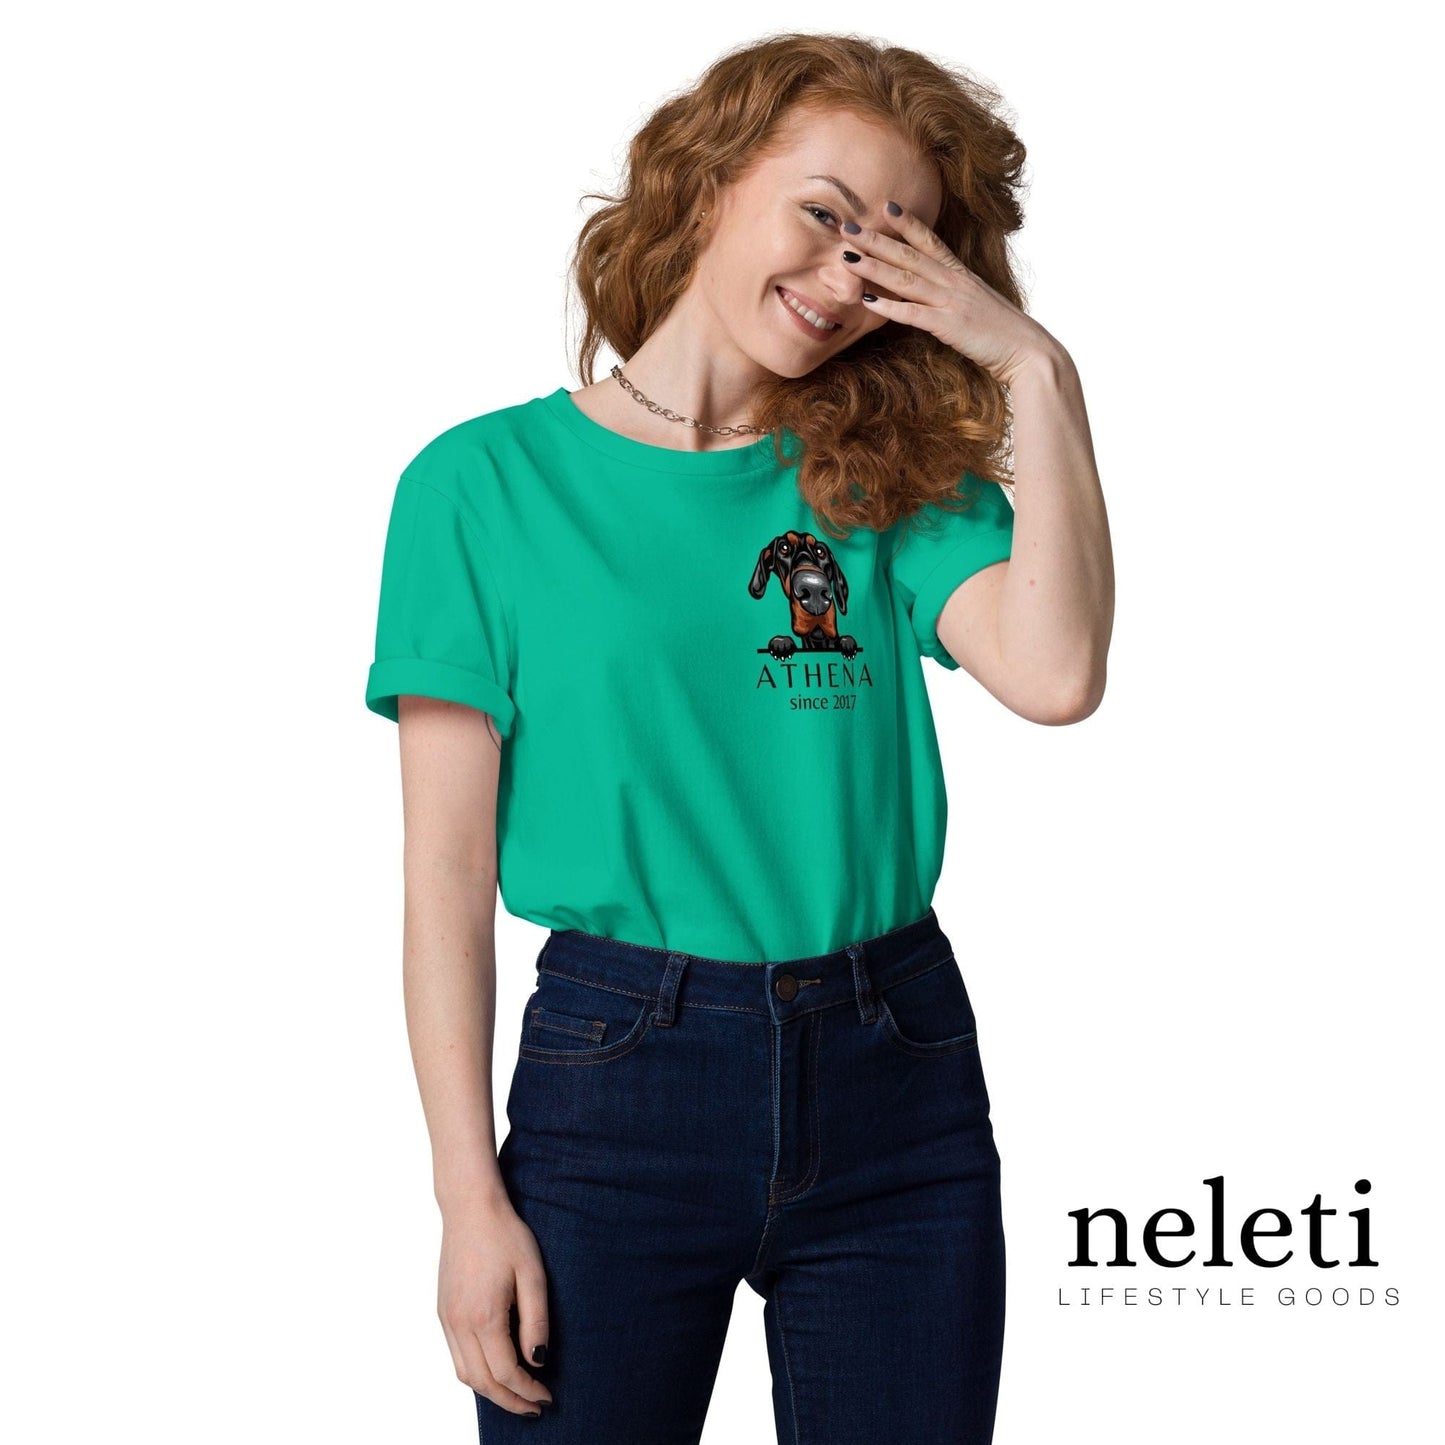 neleti.com-custom-go-green-shirt-for-dog-mom